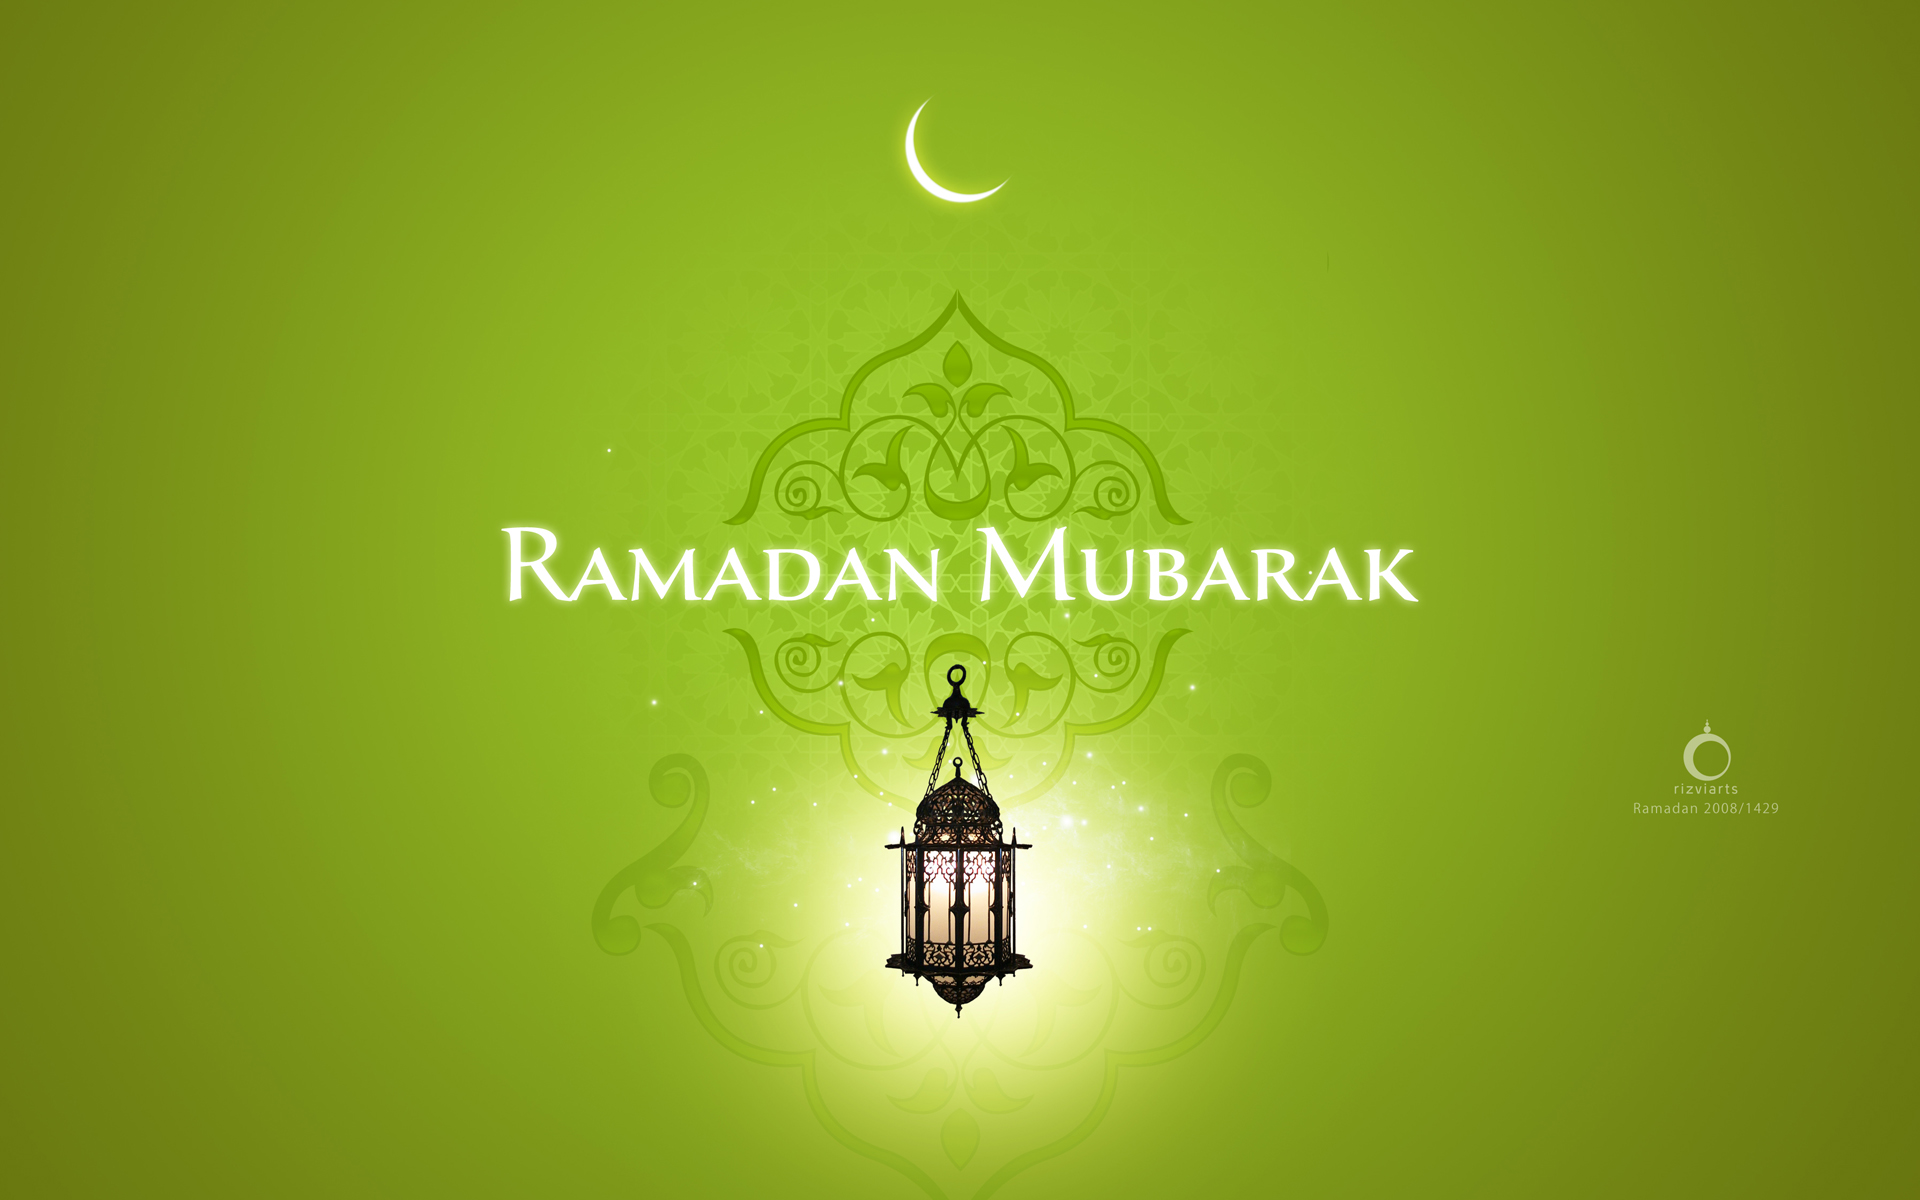 hochwertige ramadan tapete,grün,beleuchtung,text,leuchte,schriftart